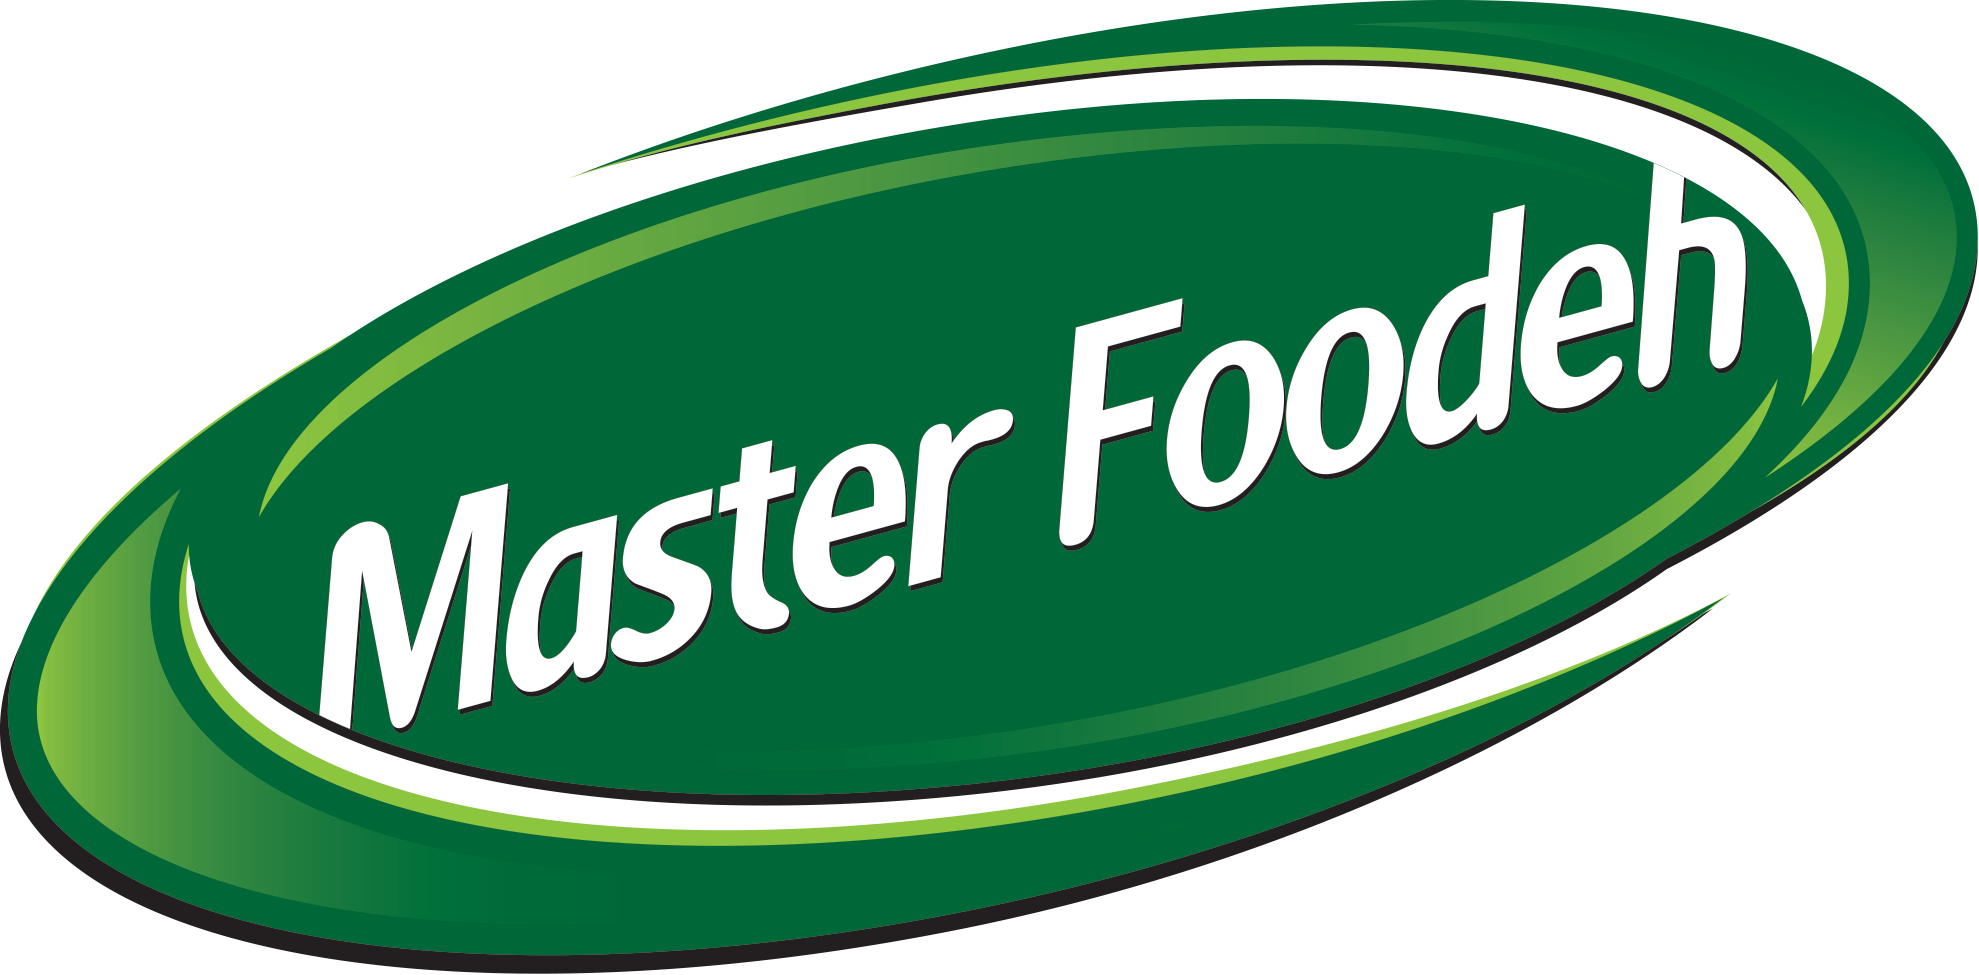 مدیر مارکتینگ بین الملل | International Marketing Manager - شرکت صنایع غذایی ماسترفوده | Master Foodeh